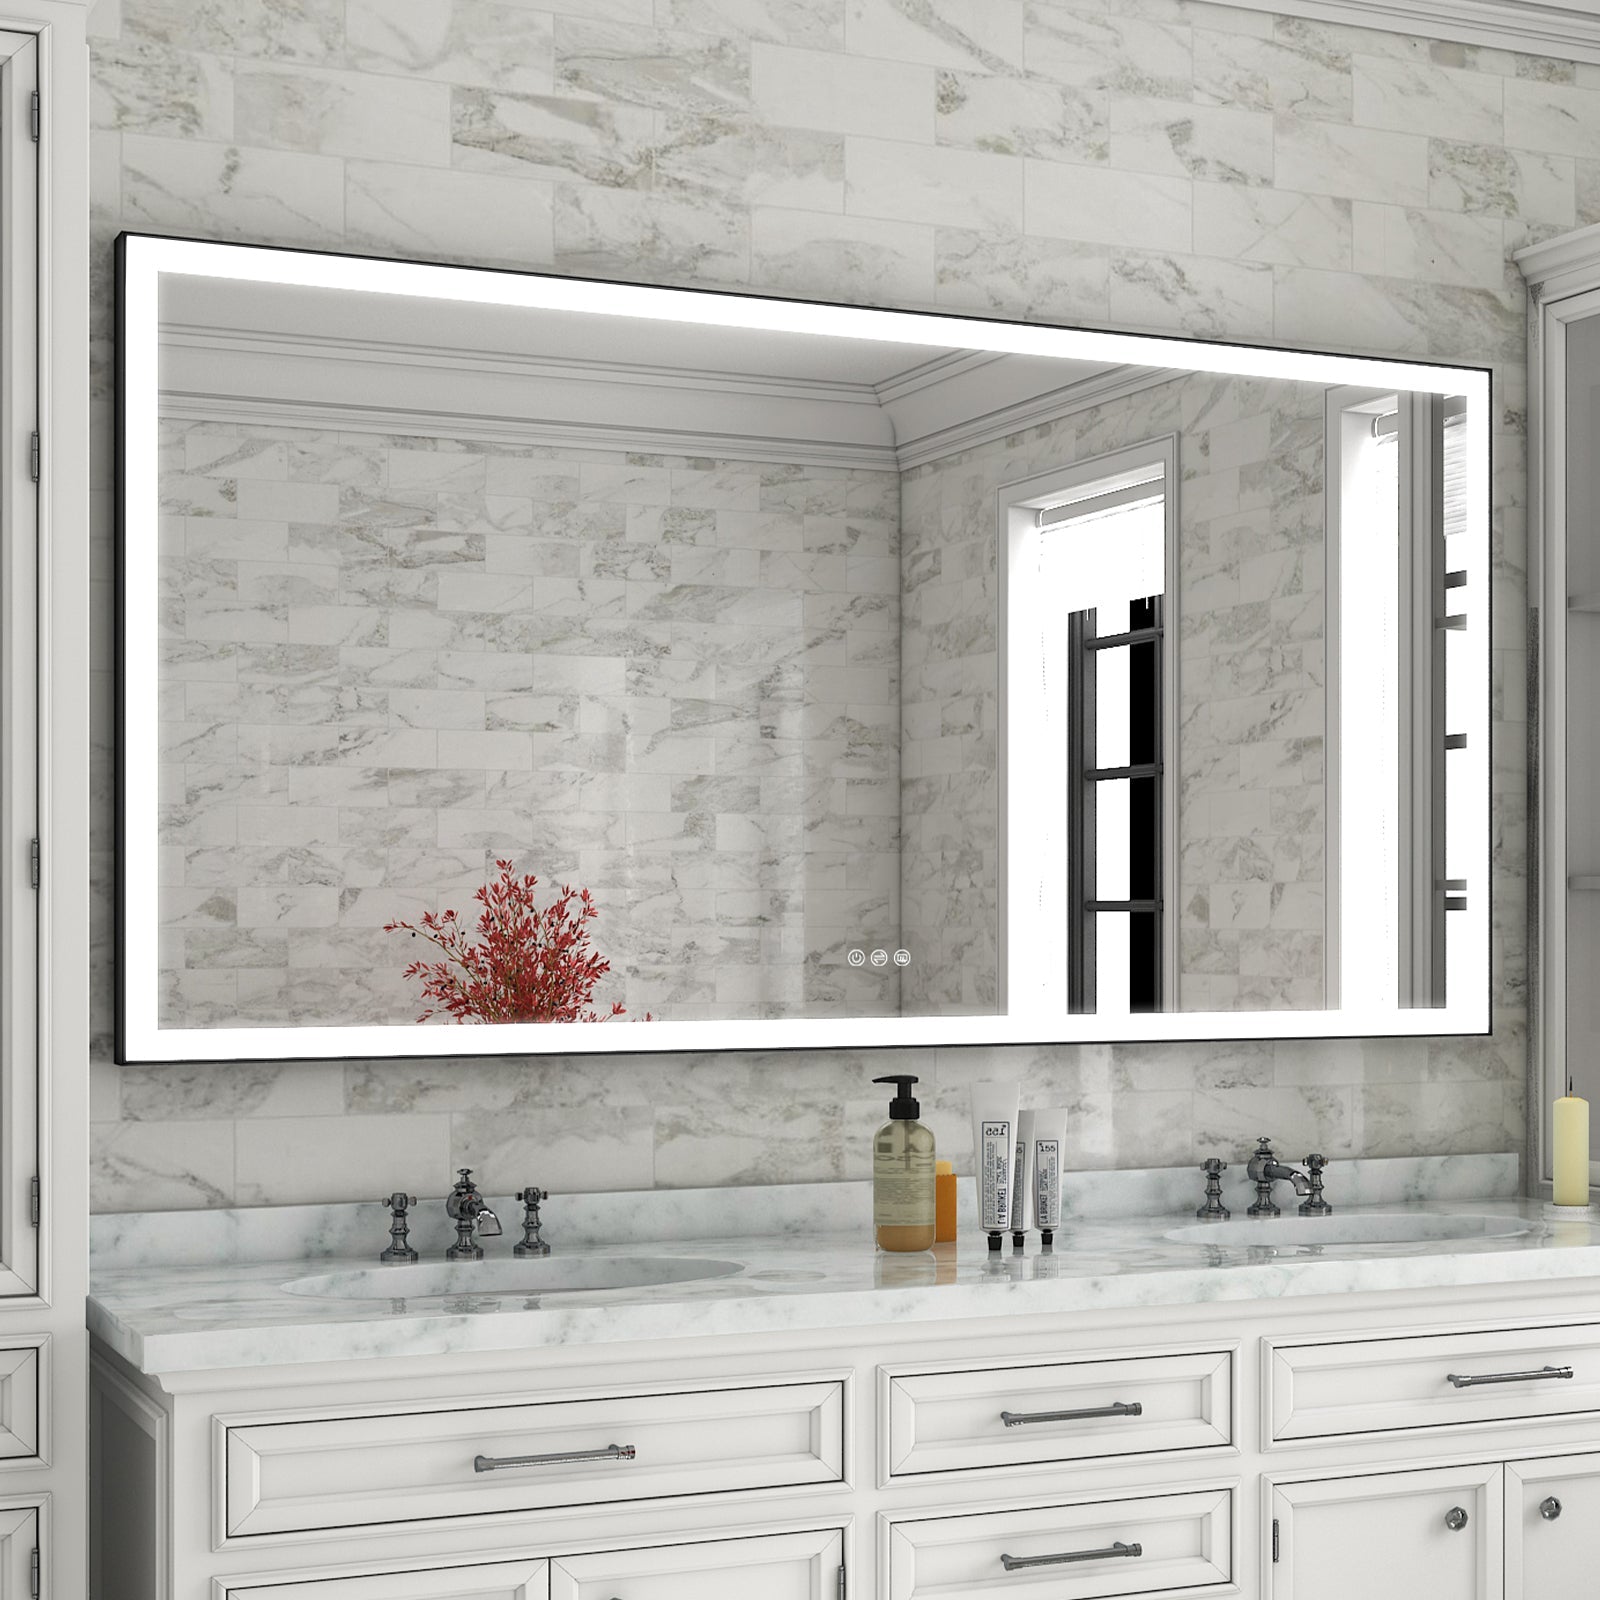 LED Bathroom Vanity Mirror